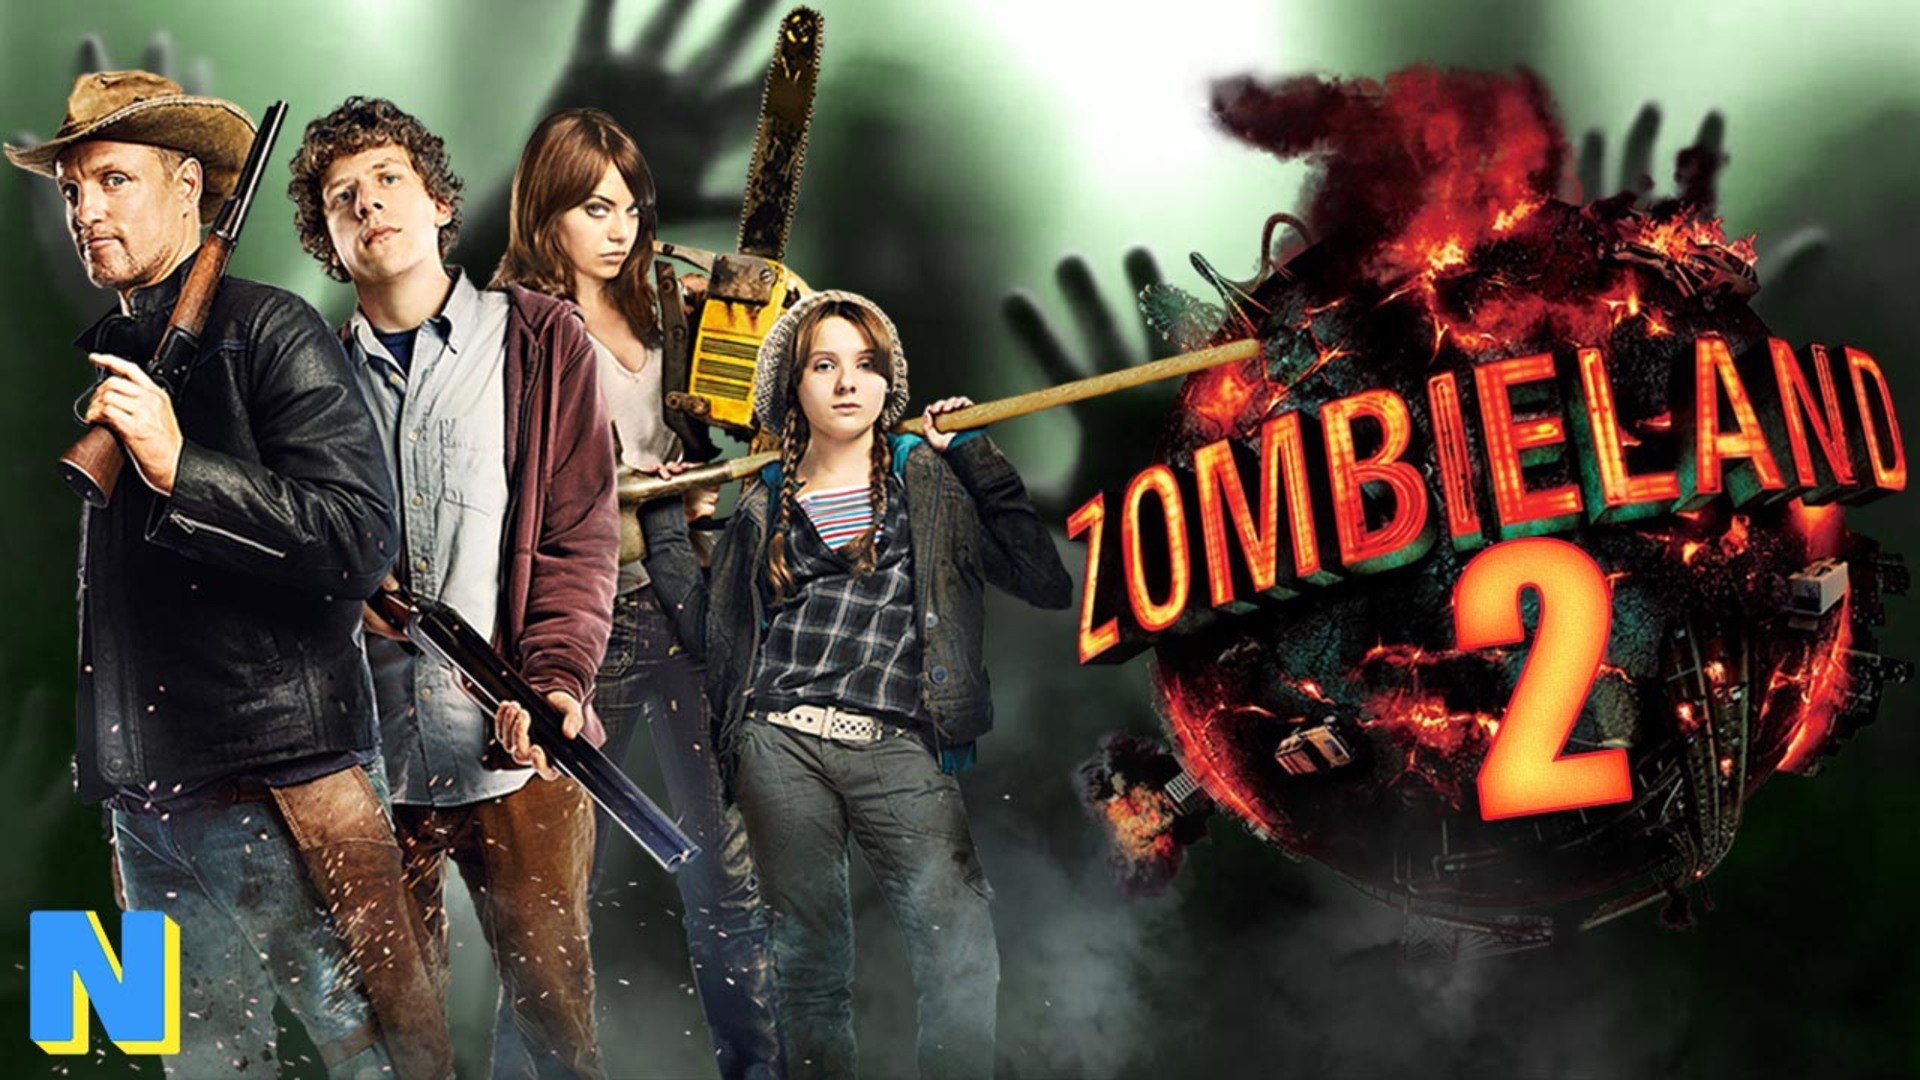 Zombieland 2 Details - Zombieland 2 Will Reunite the Original Cast